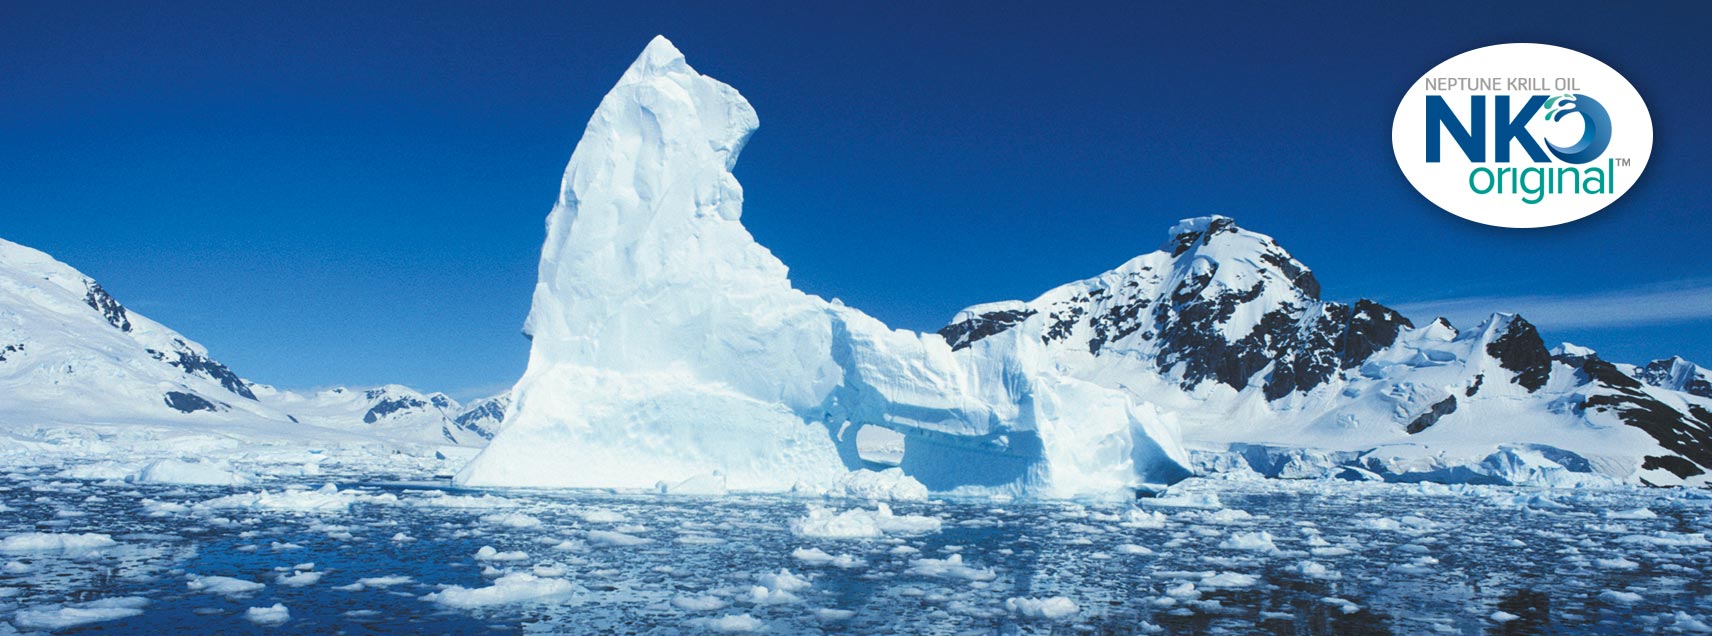 Krillöl Kapseln aus der Antarktis